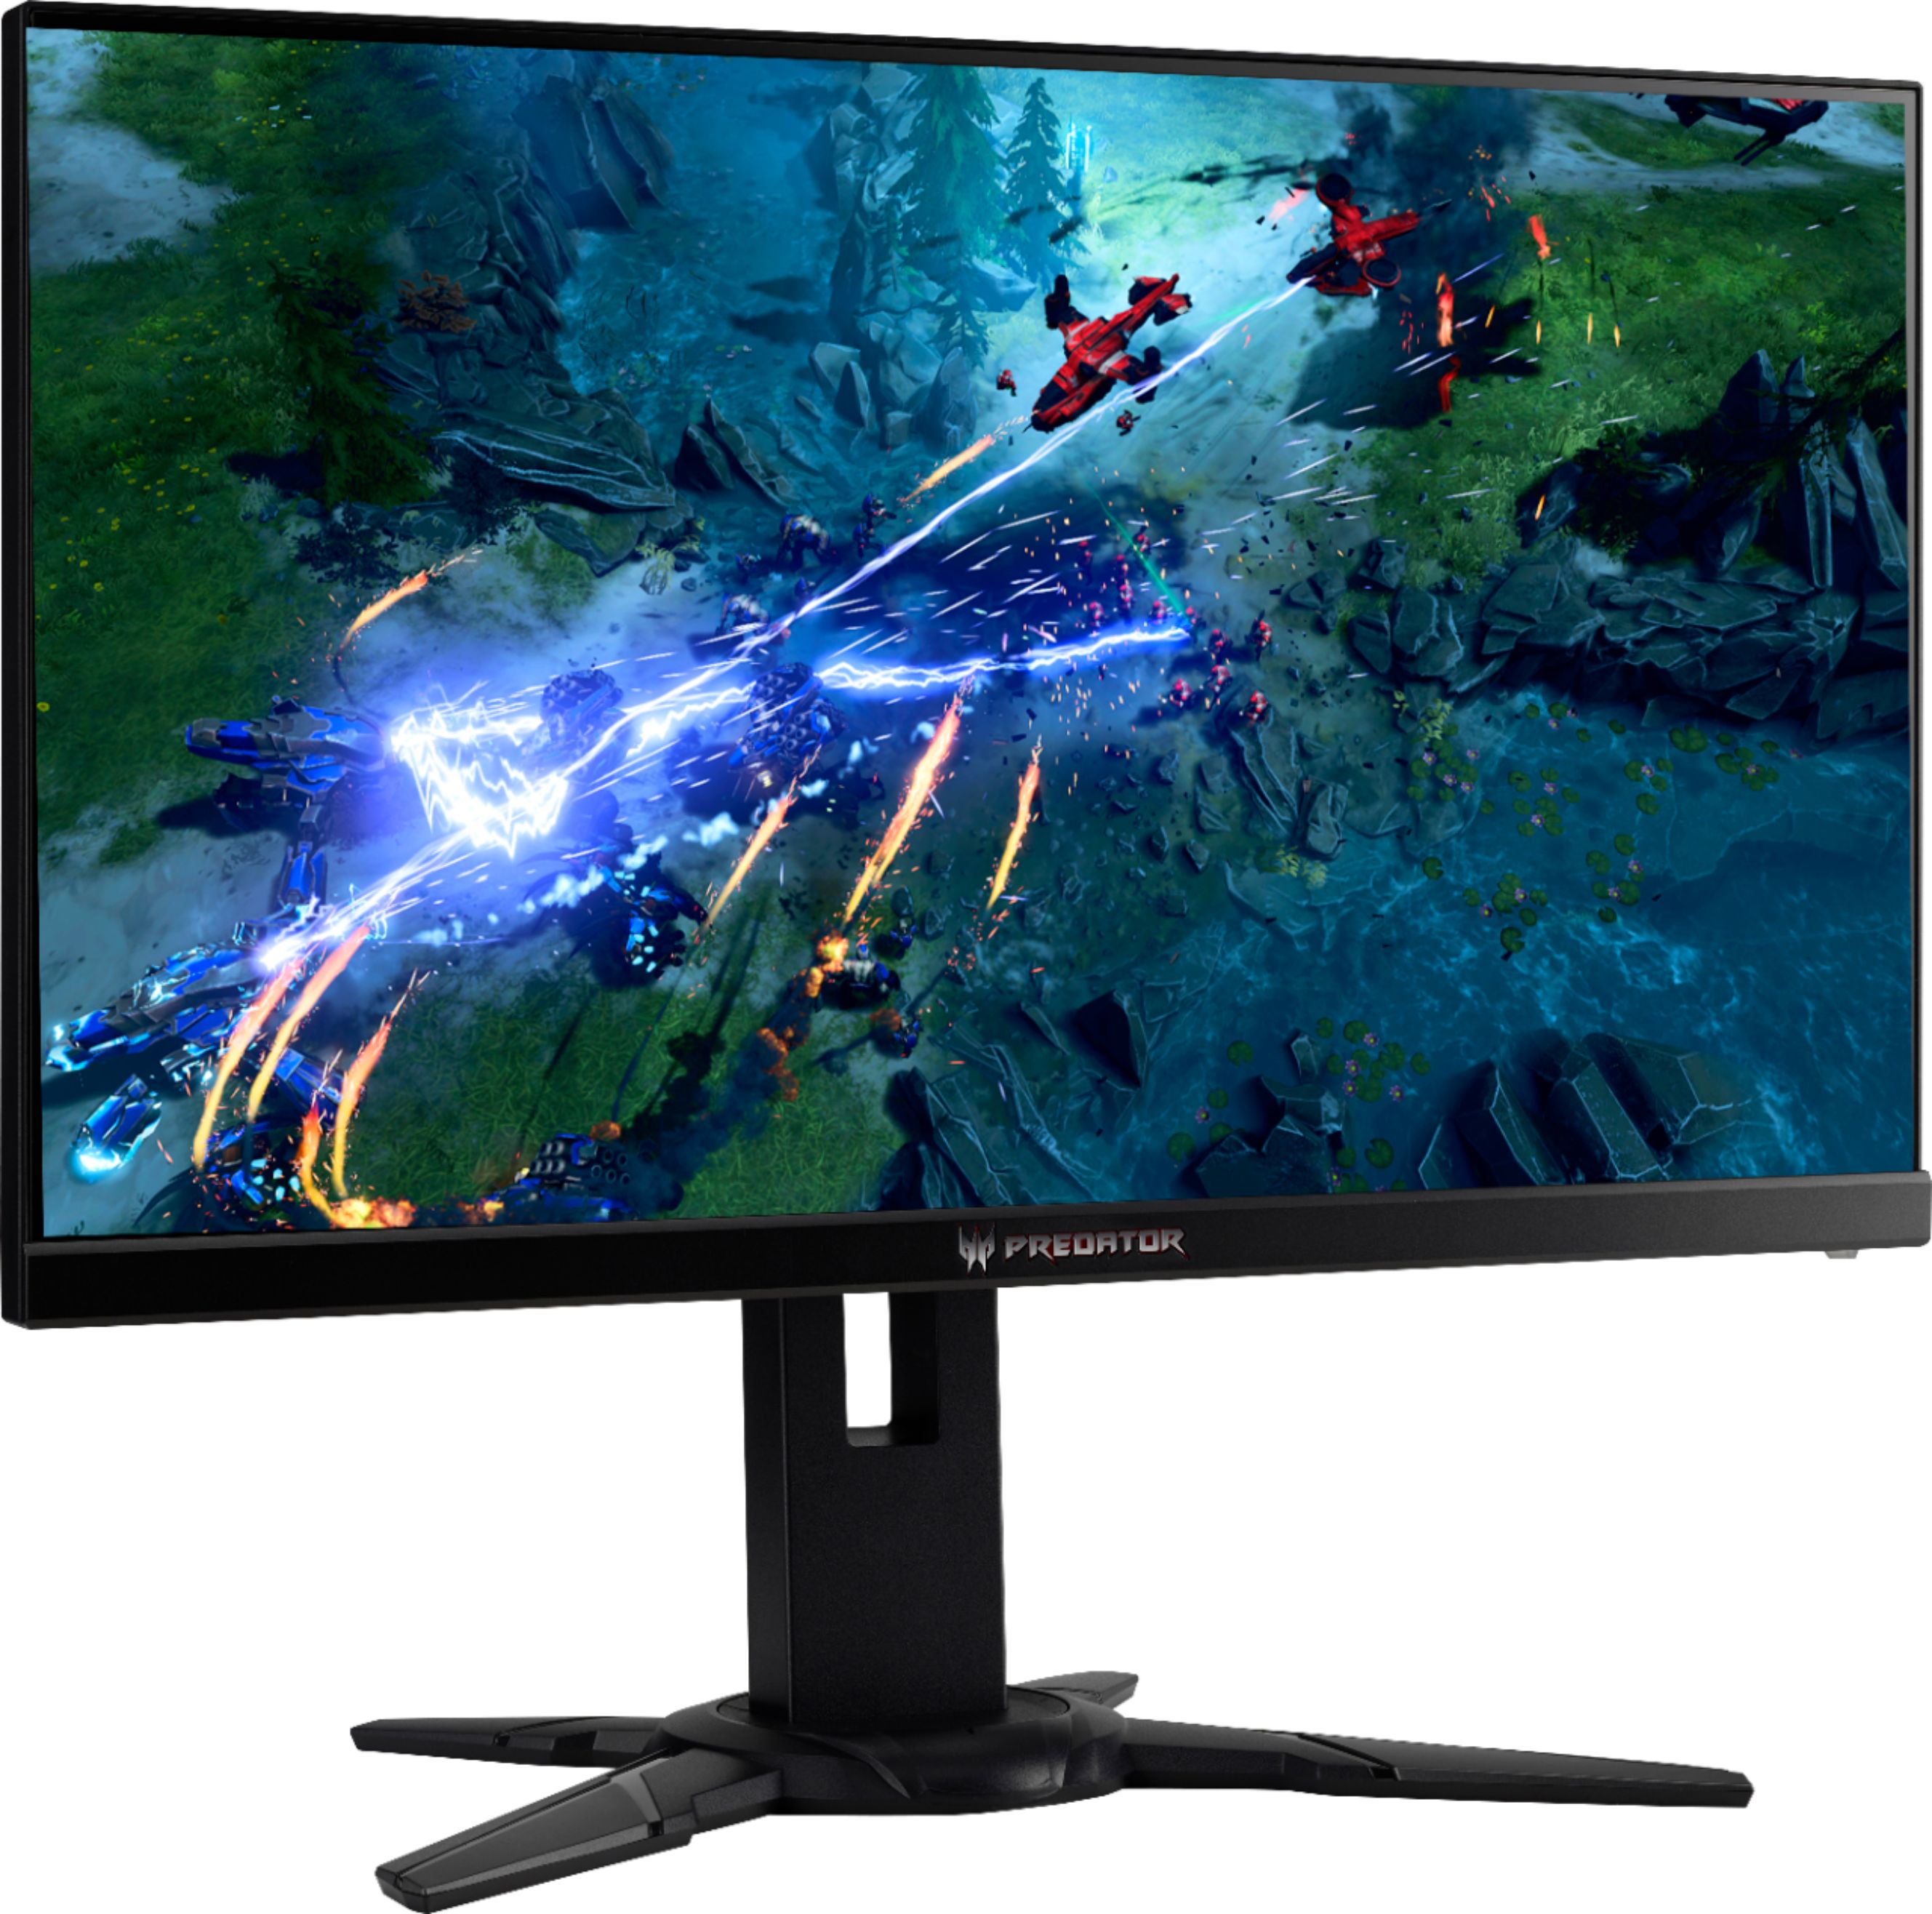 Angle View: Acer - Predator XB272 27" LED FHD G-SYNC Monitor (DisplayPort, HDMI, USB) - Black